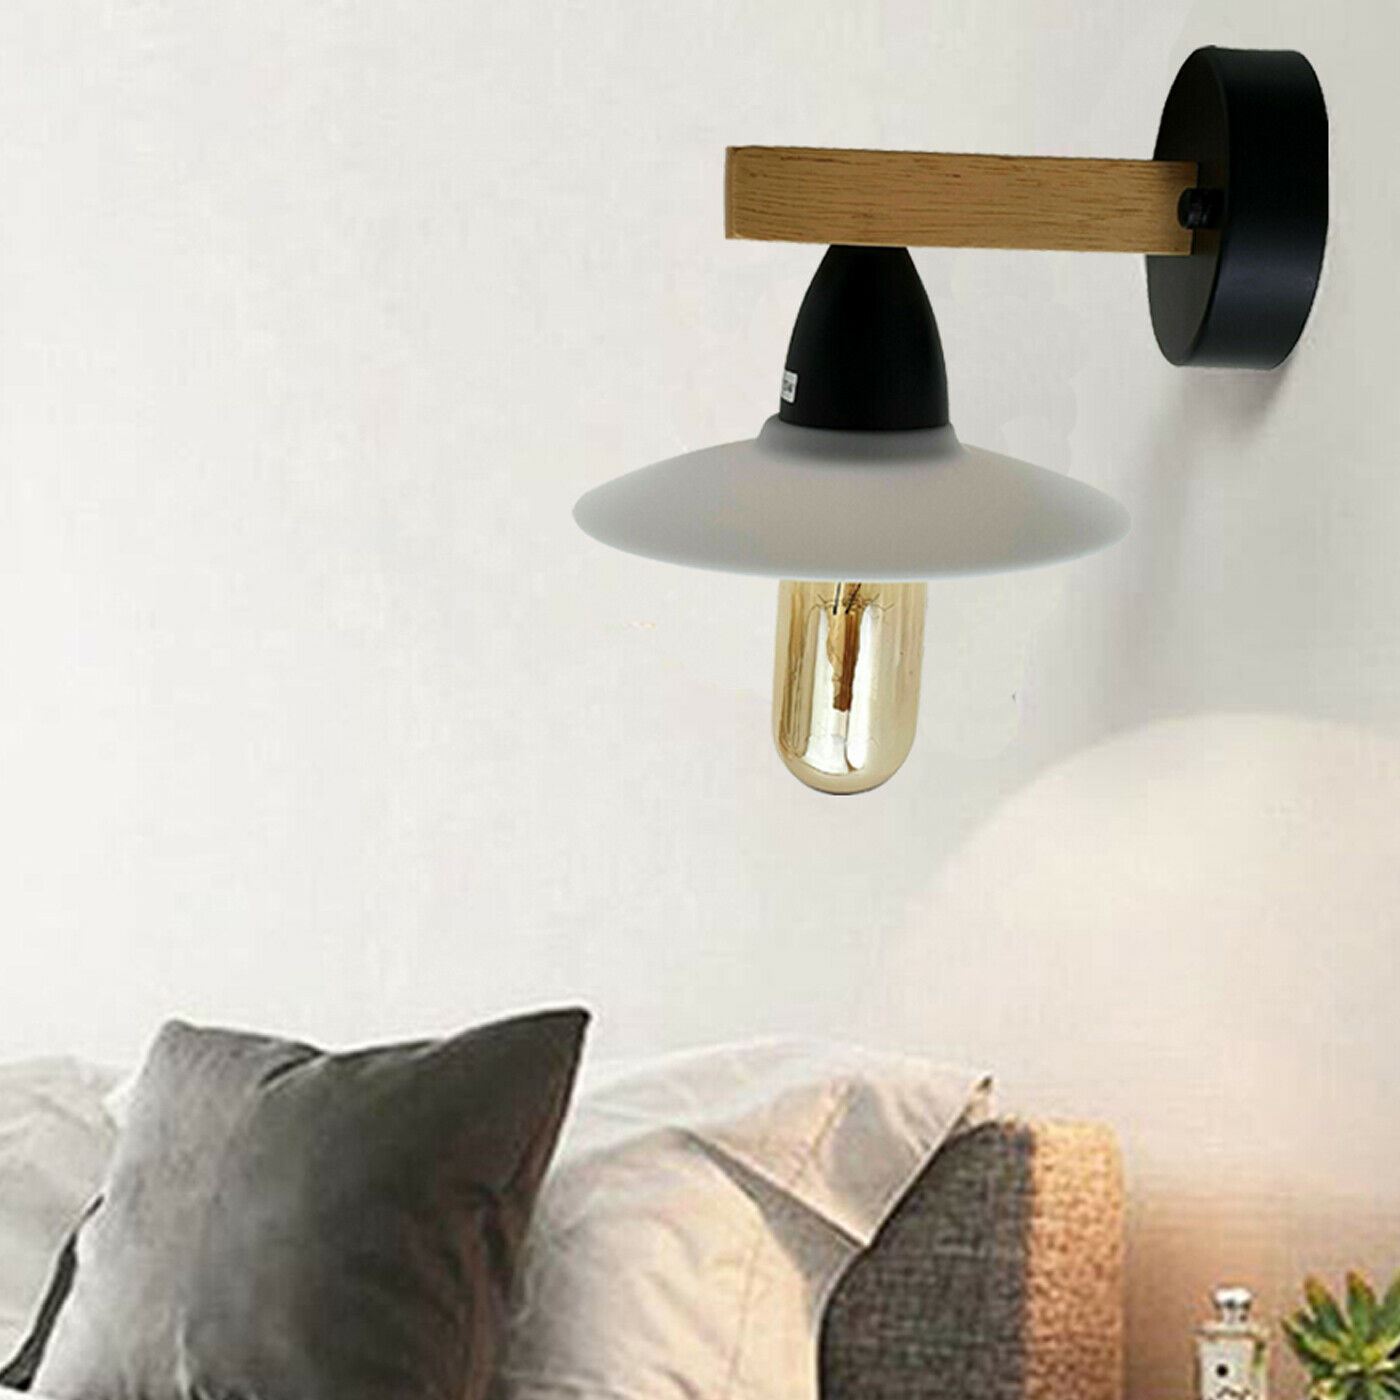 Vintage Modern Indoor Wall Sconce Wall Light Lamp Fitting Fixture For Bar, Bedroom, Dining Room, Guestroom~1327 - LEDSone UK Ltd